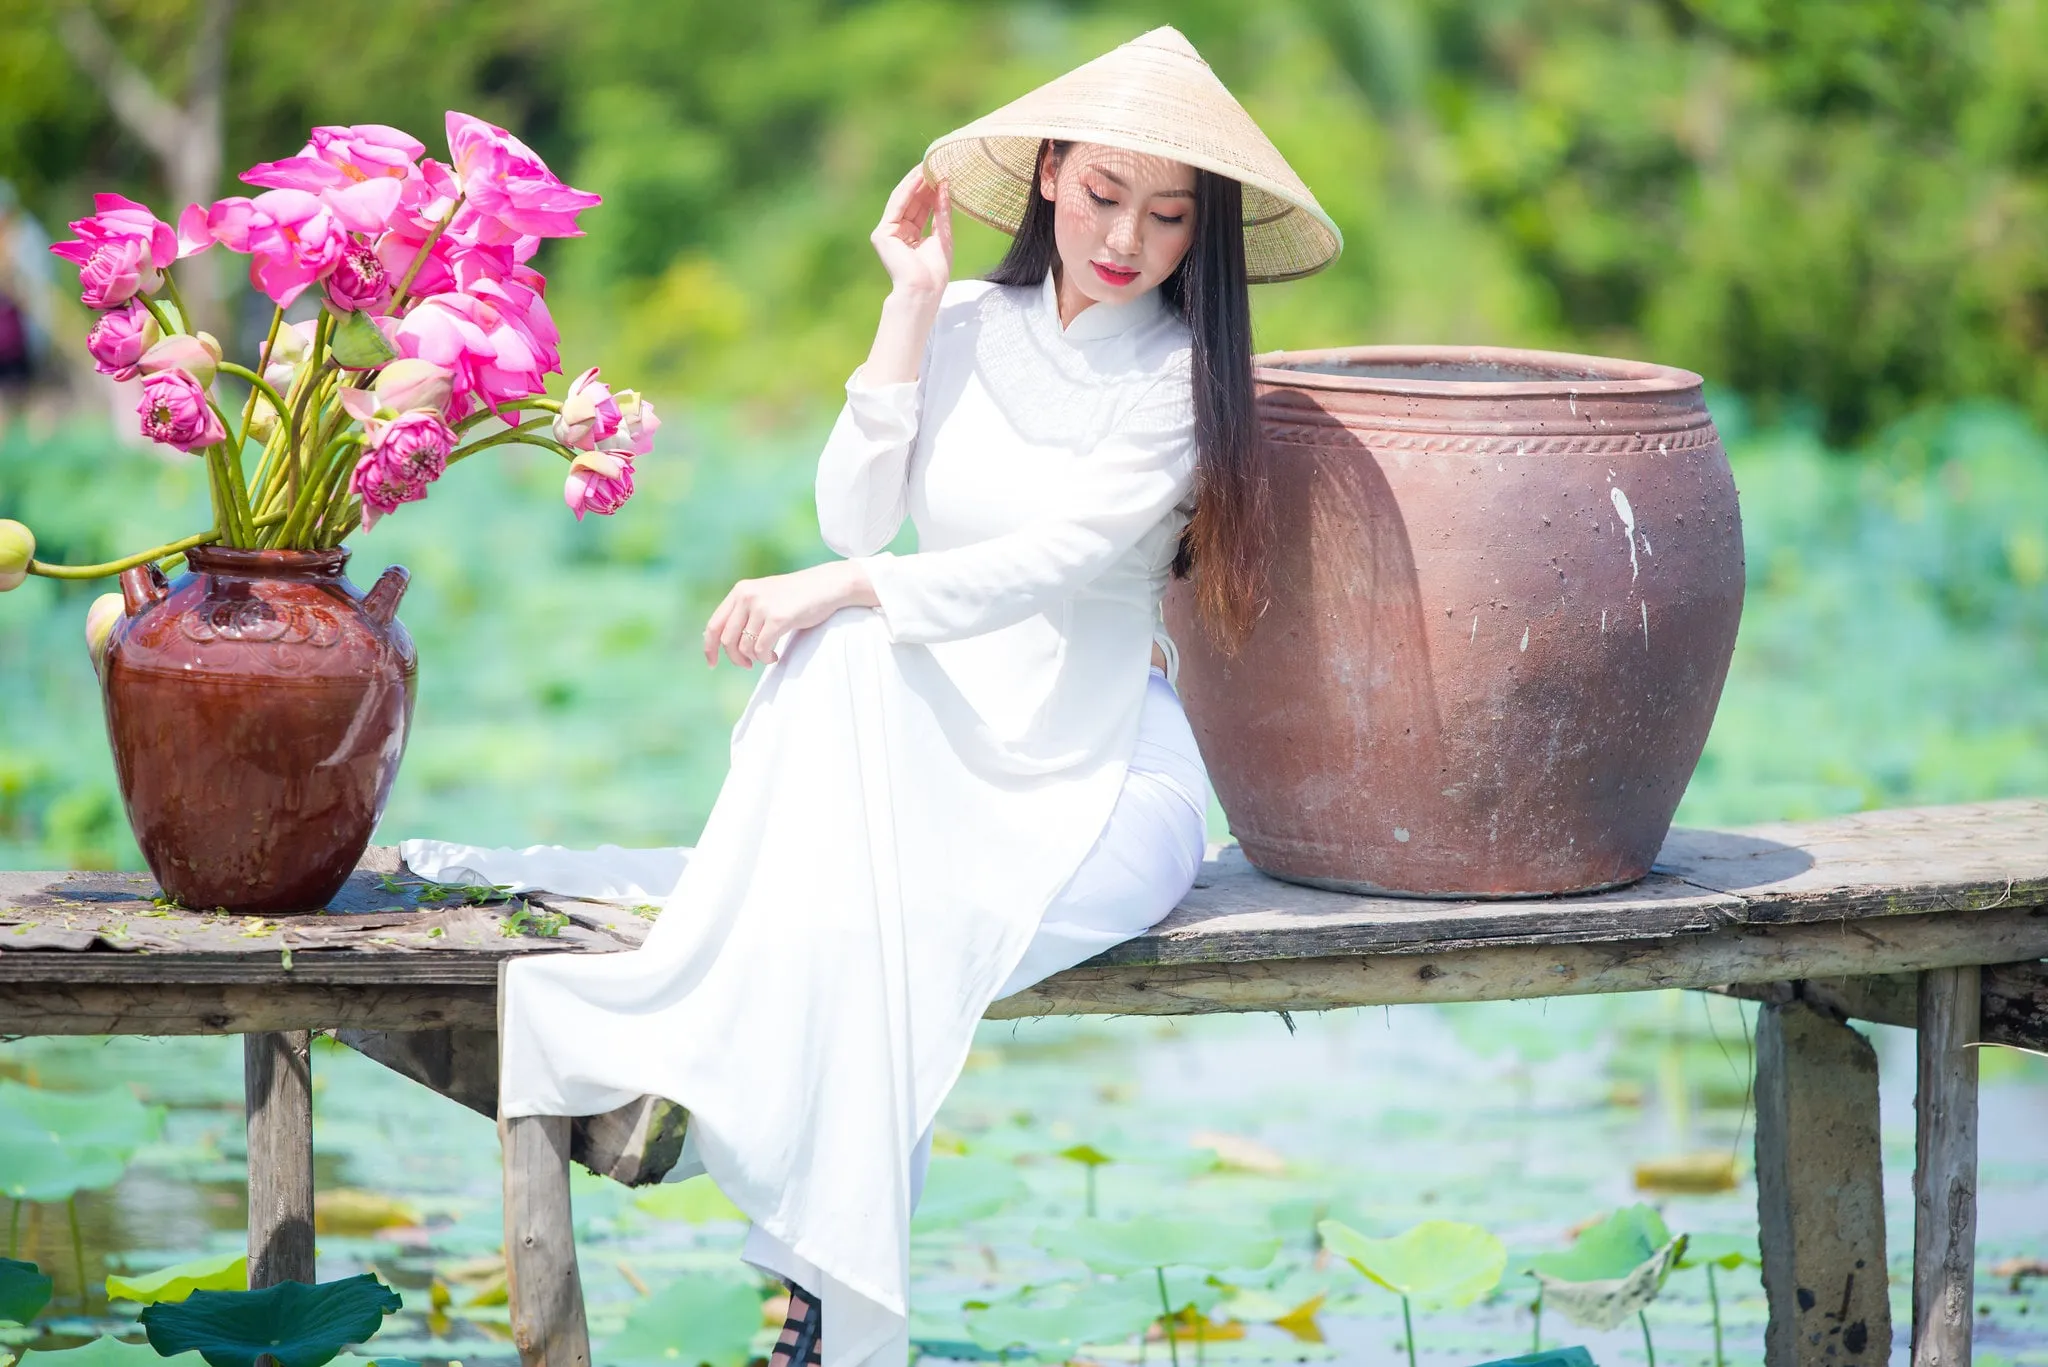 Chup hinh hoa sen 16 - 49 cách tạo dáng chụp ảnh với áo dài tuyệt đẹp - HThao Studio